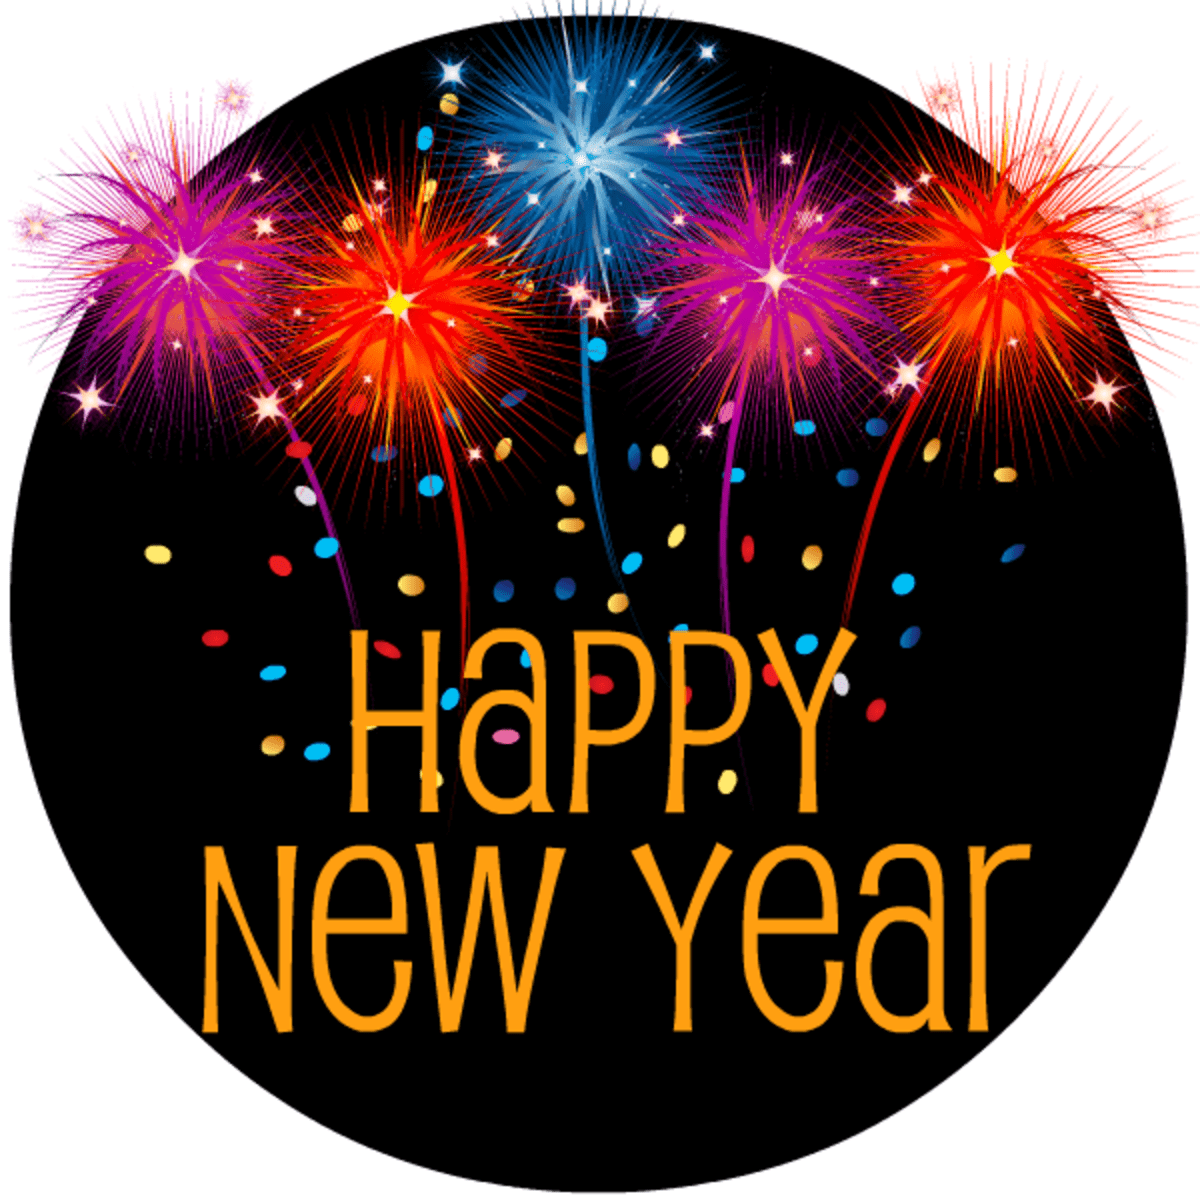 Enjoy your new year celebration